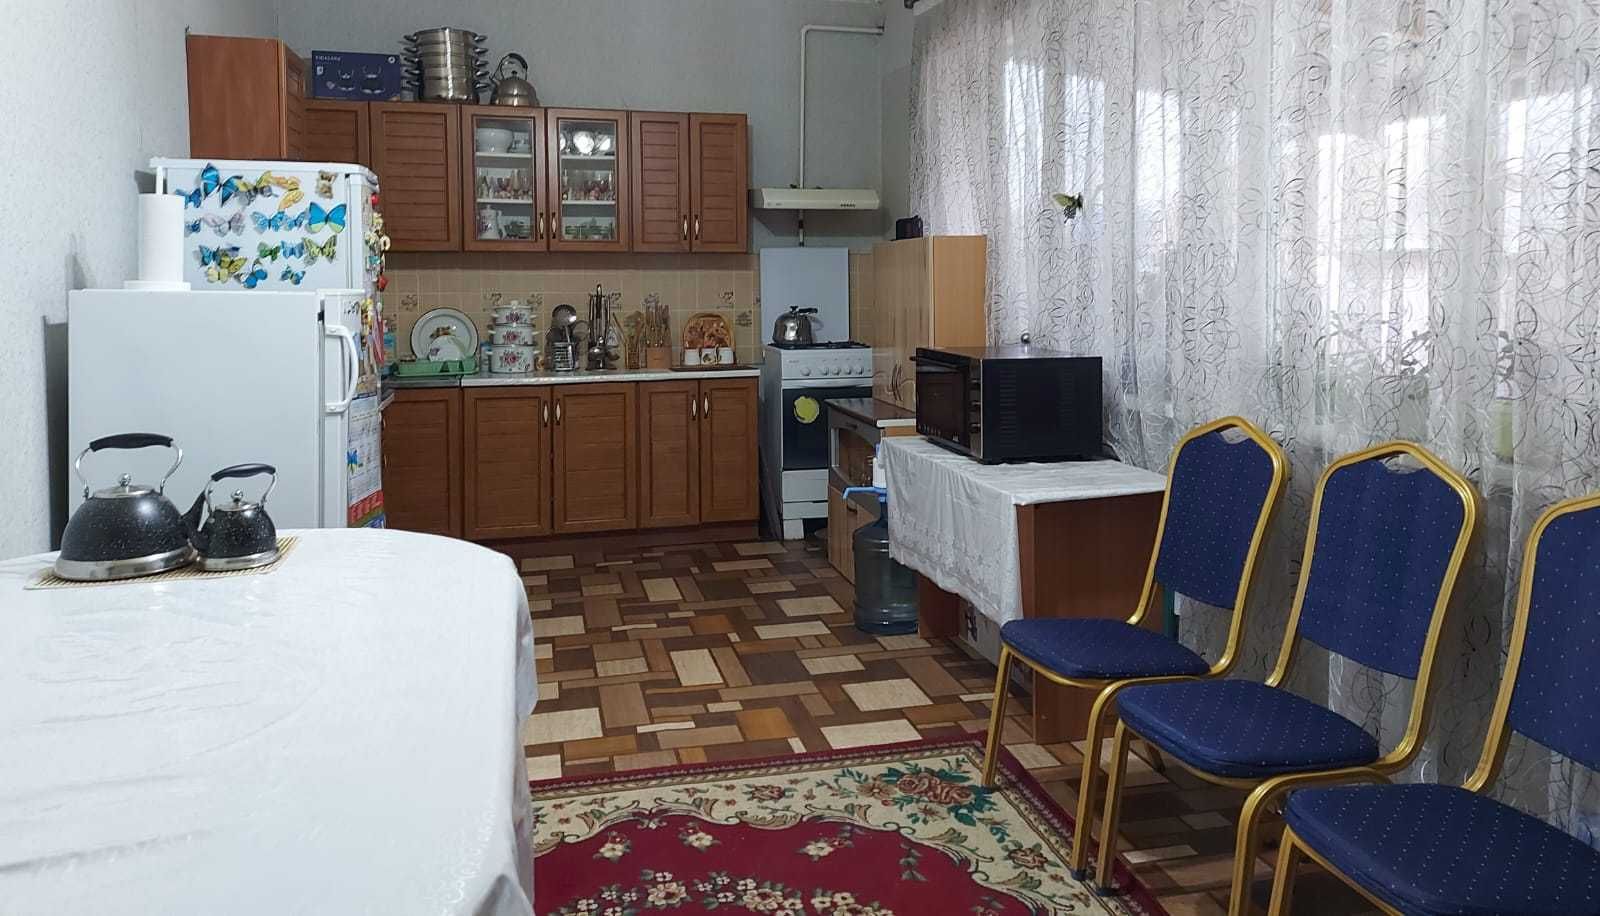 Продается 2 жилых дома по улице Спортивная